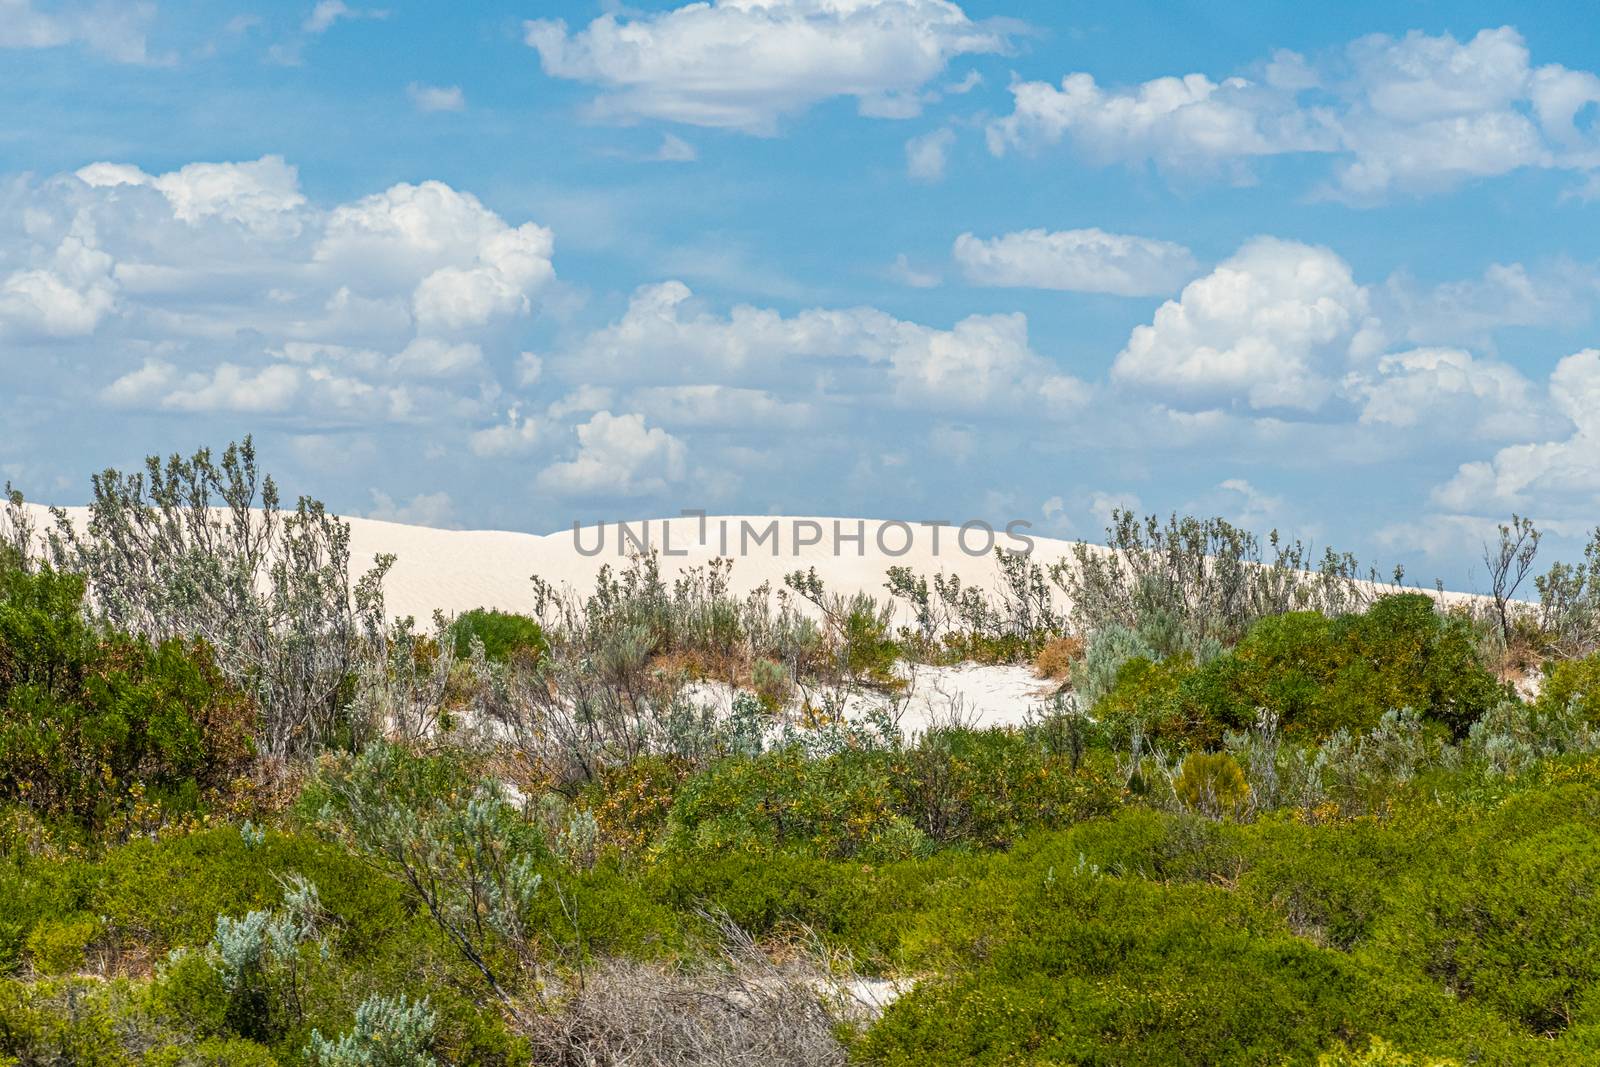 The Pinnacles Desert white sand dunes in west Australian landscape